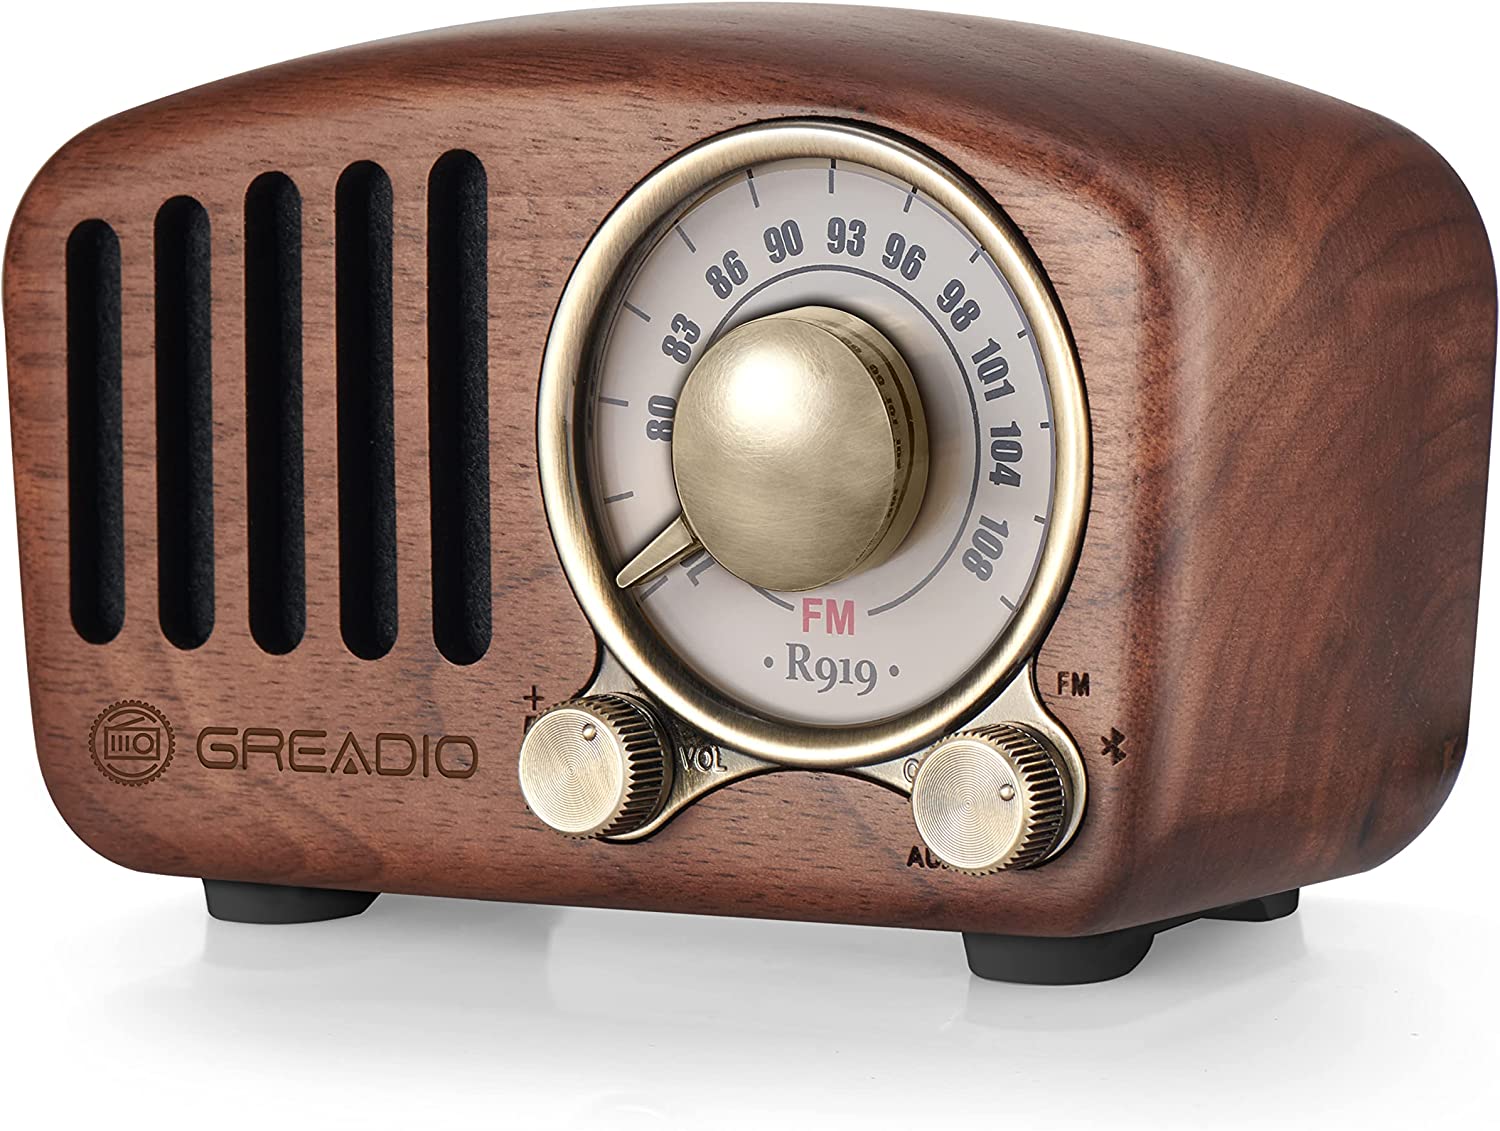 Amazon devices as decor decorative speaker vintage radio